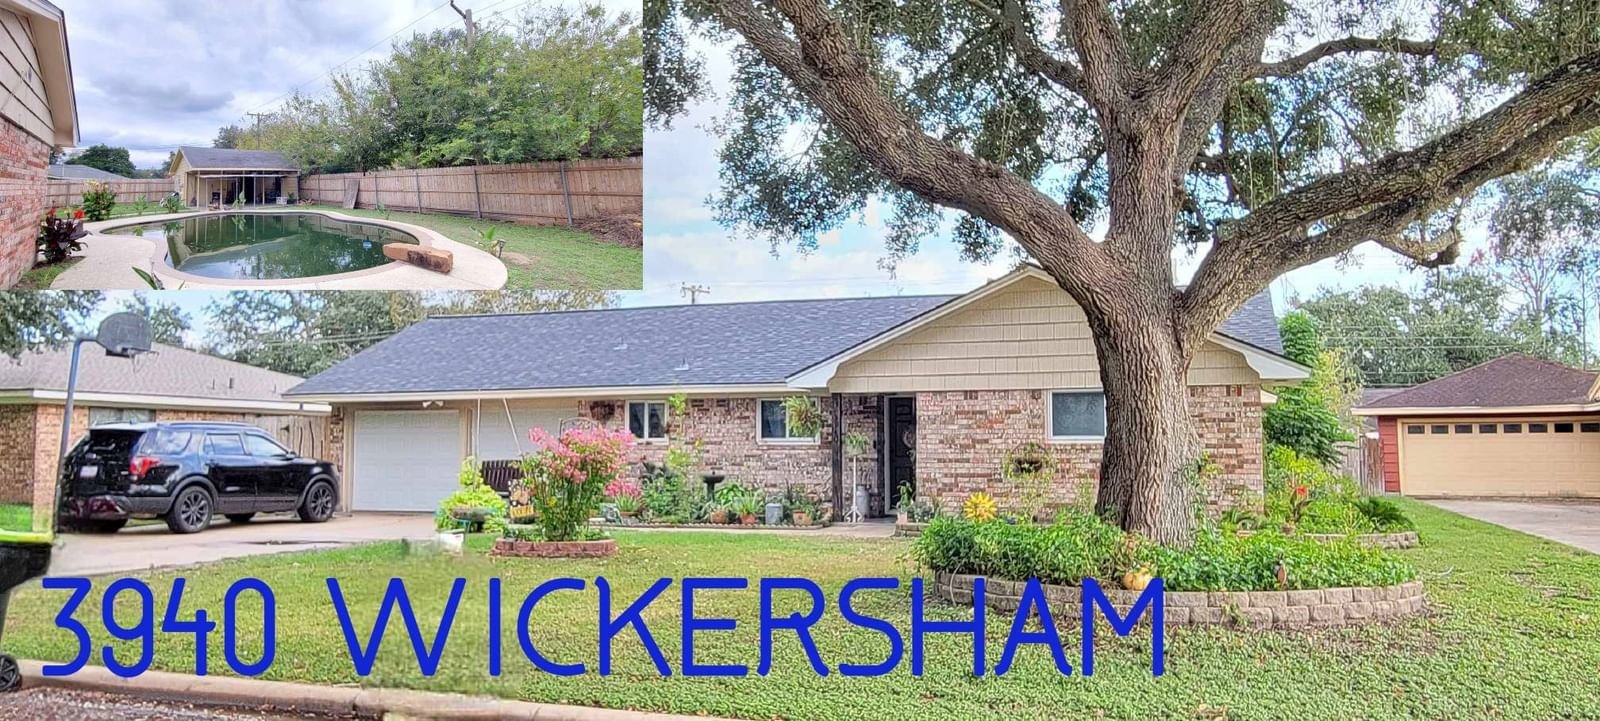 Real estate property located at 3940 Wickersham, Matagorda, Mcdonald Meadows, Bay City, TX, US